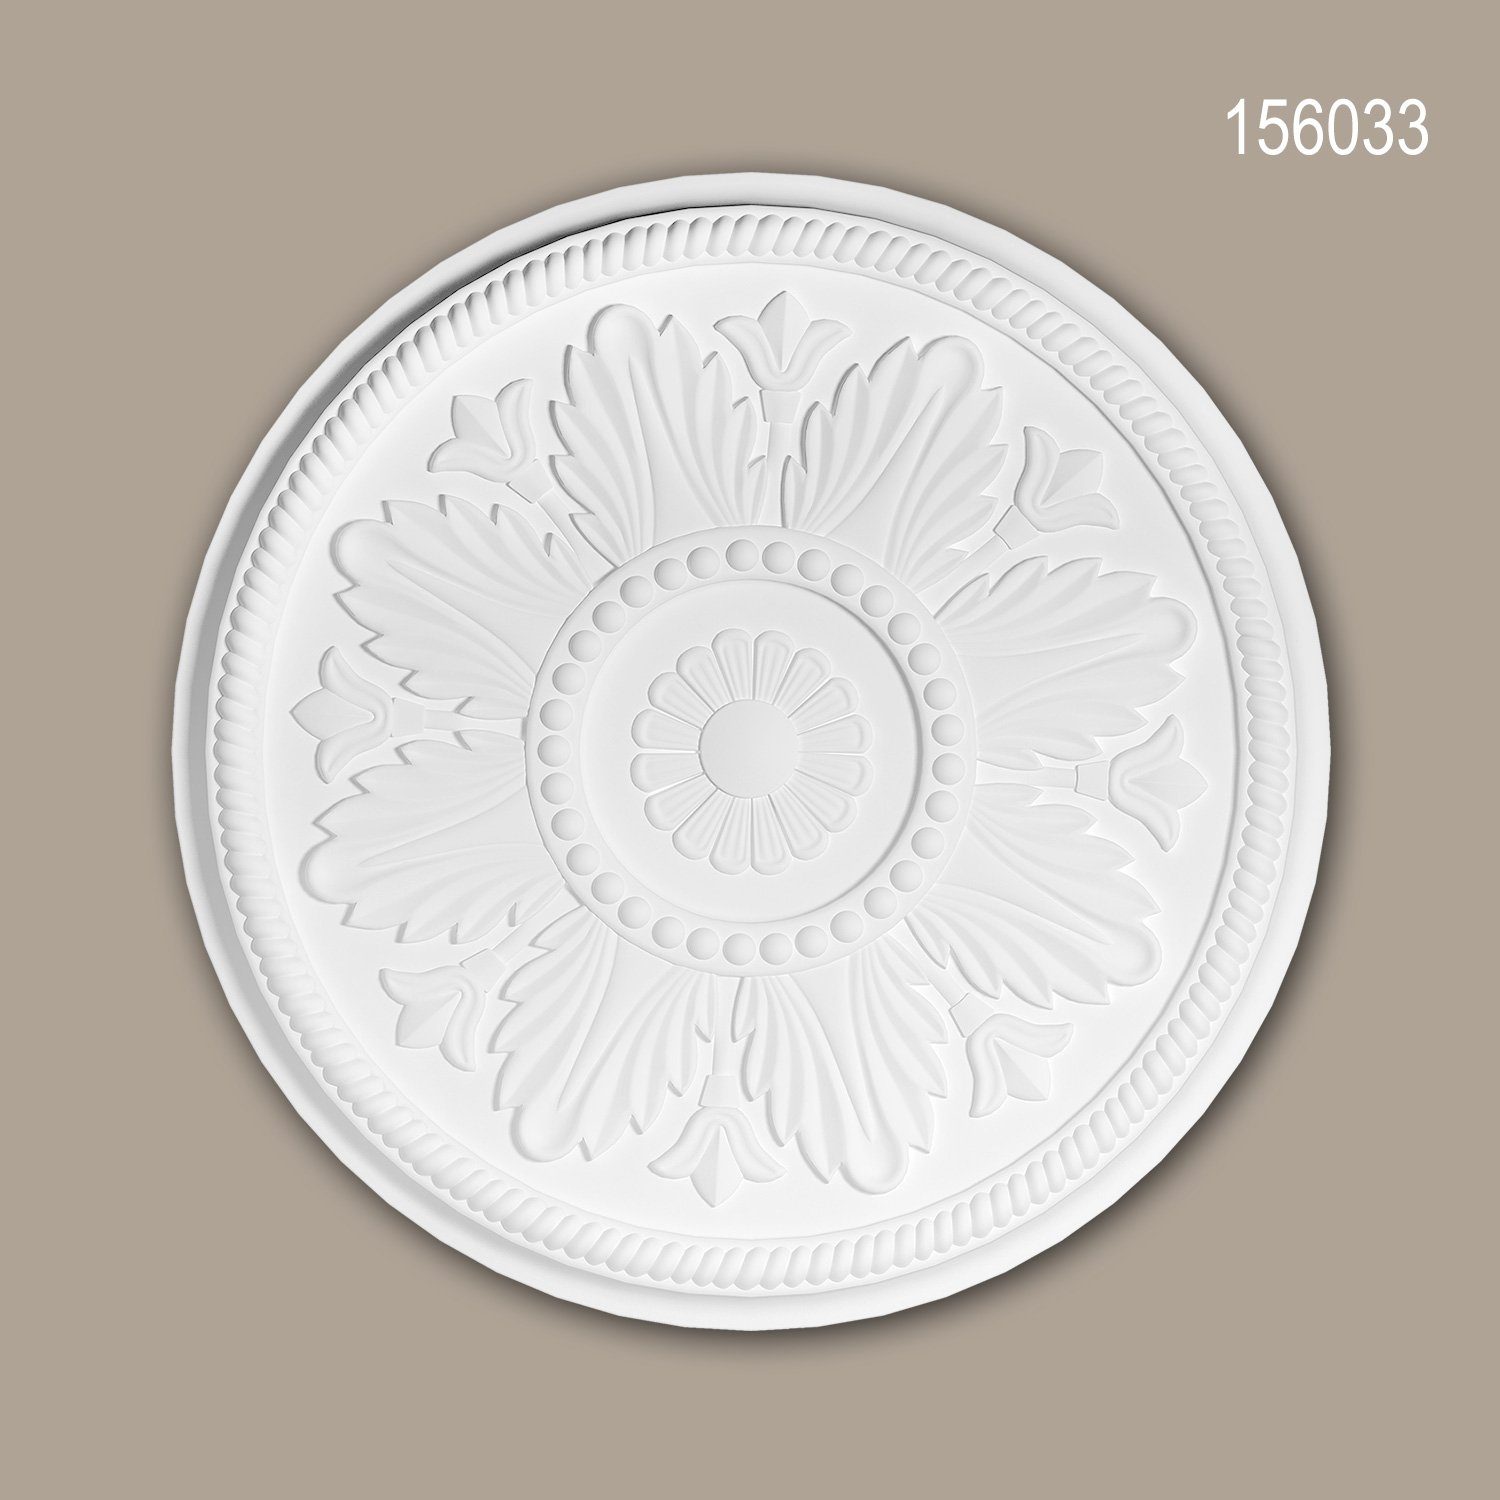 Profhome Decken-Rosette 156033 (Rosette, 1 St., Deckenrosette, Medallion, Stuckrosette, Deckenelement, Zierelement, Durchmesser 46 cm), weiß, vorgrundiert, Stil: Neo-Klassizismus